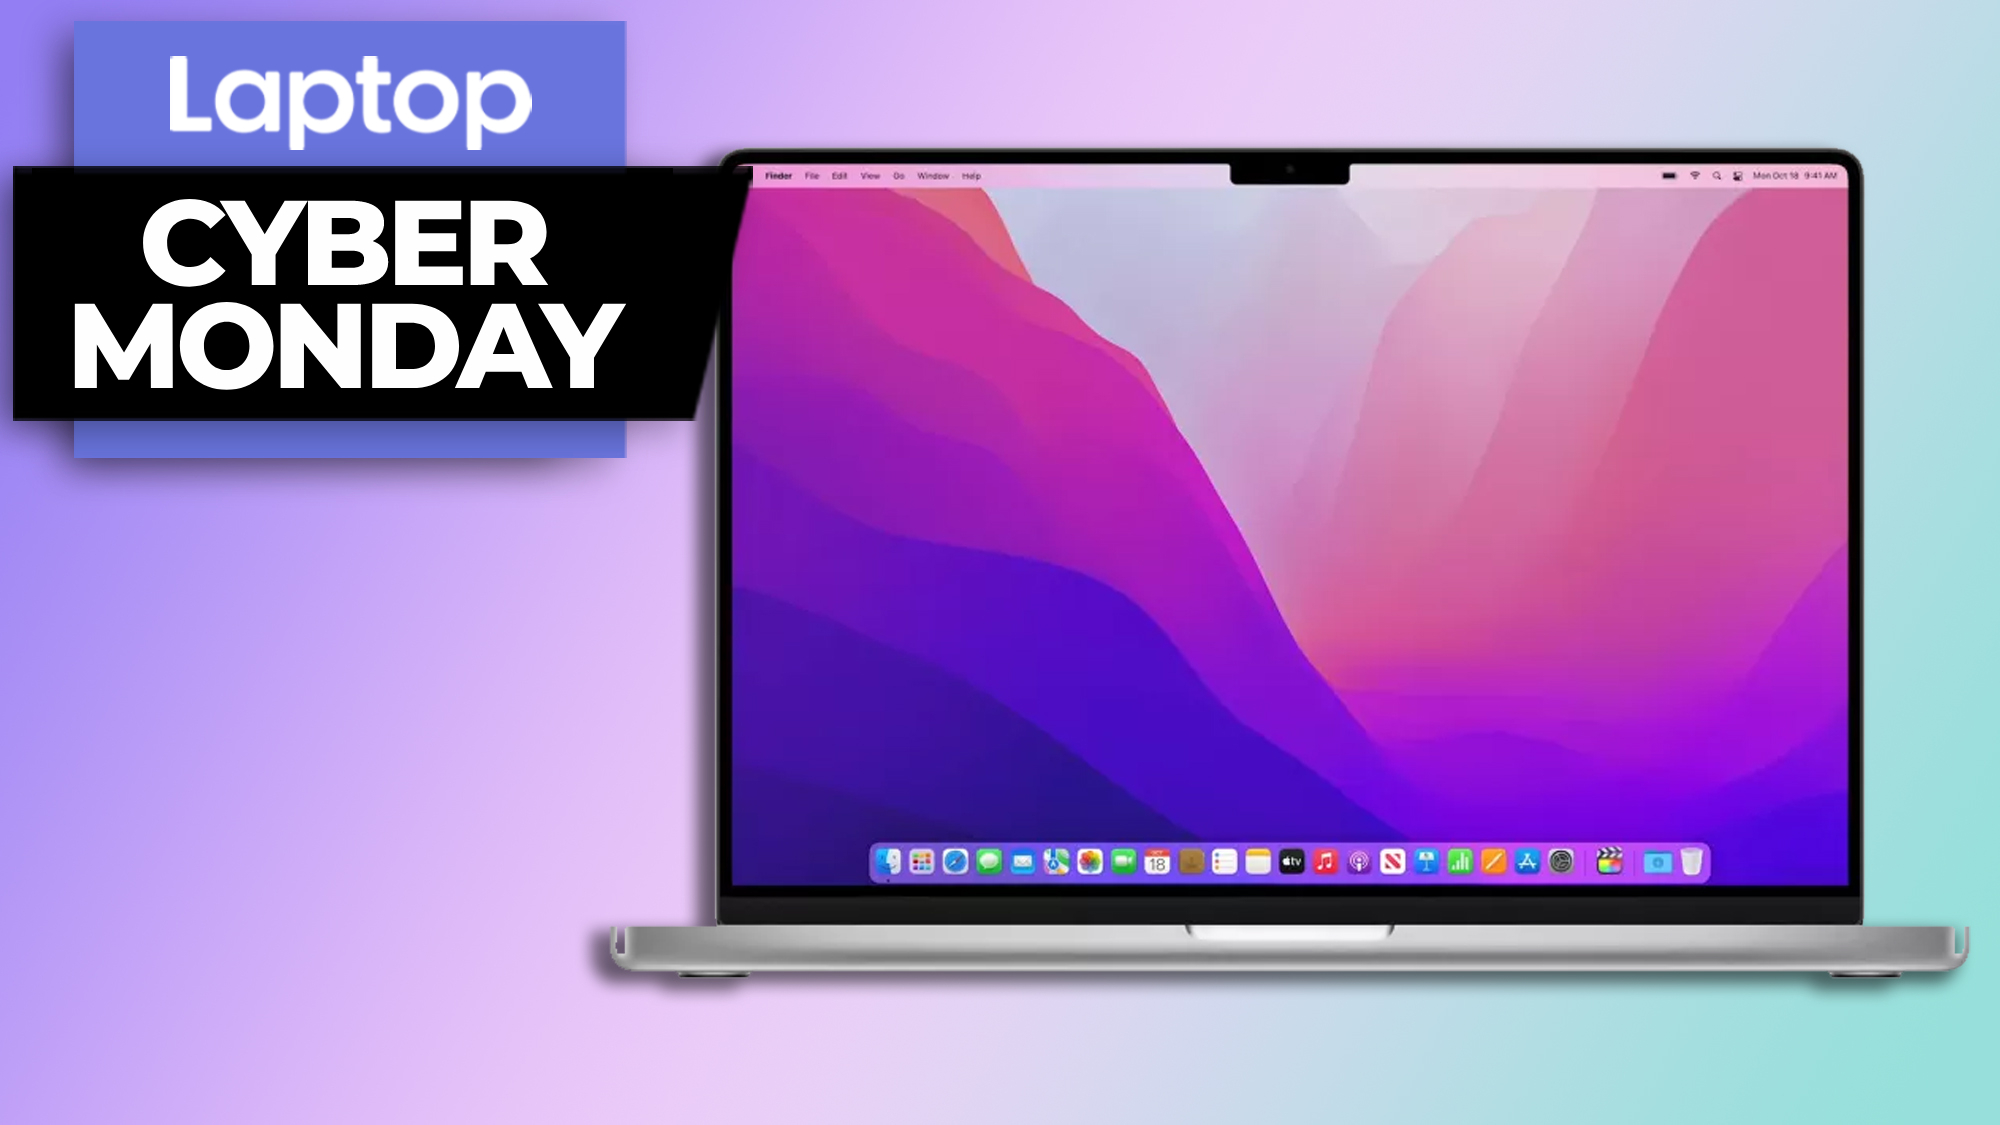 MacBook Pro 16-inch $100 off